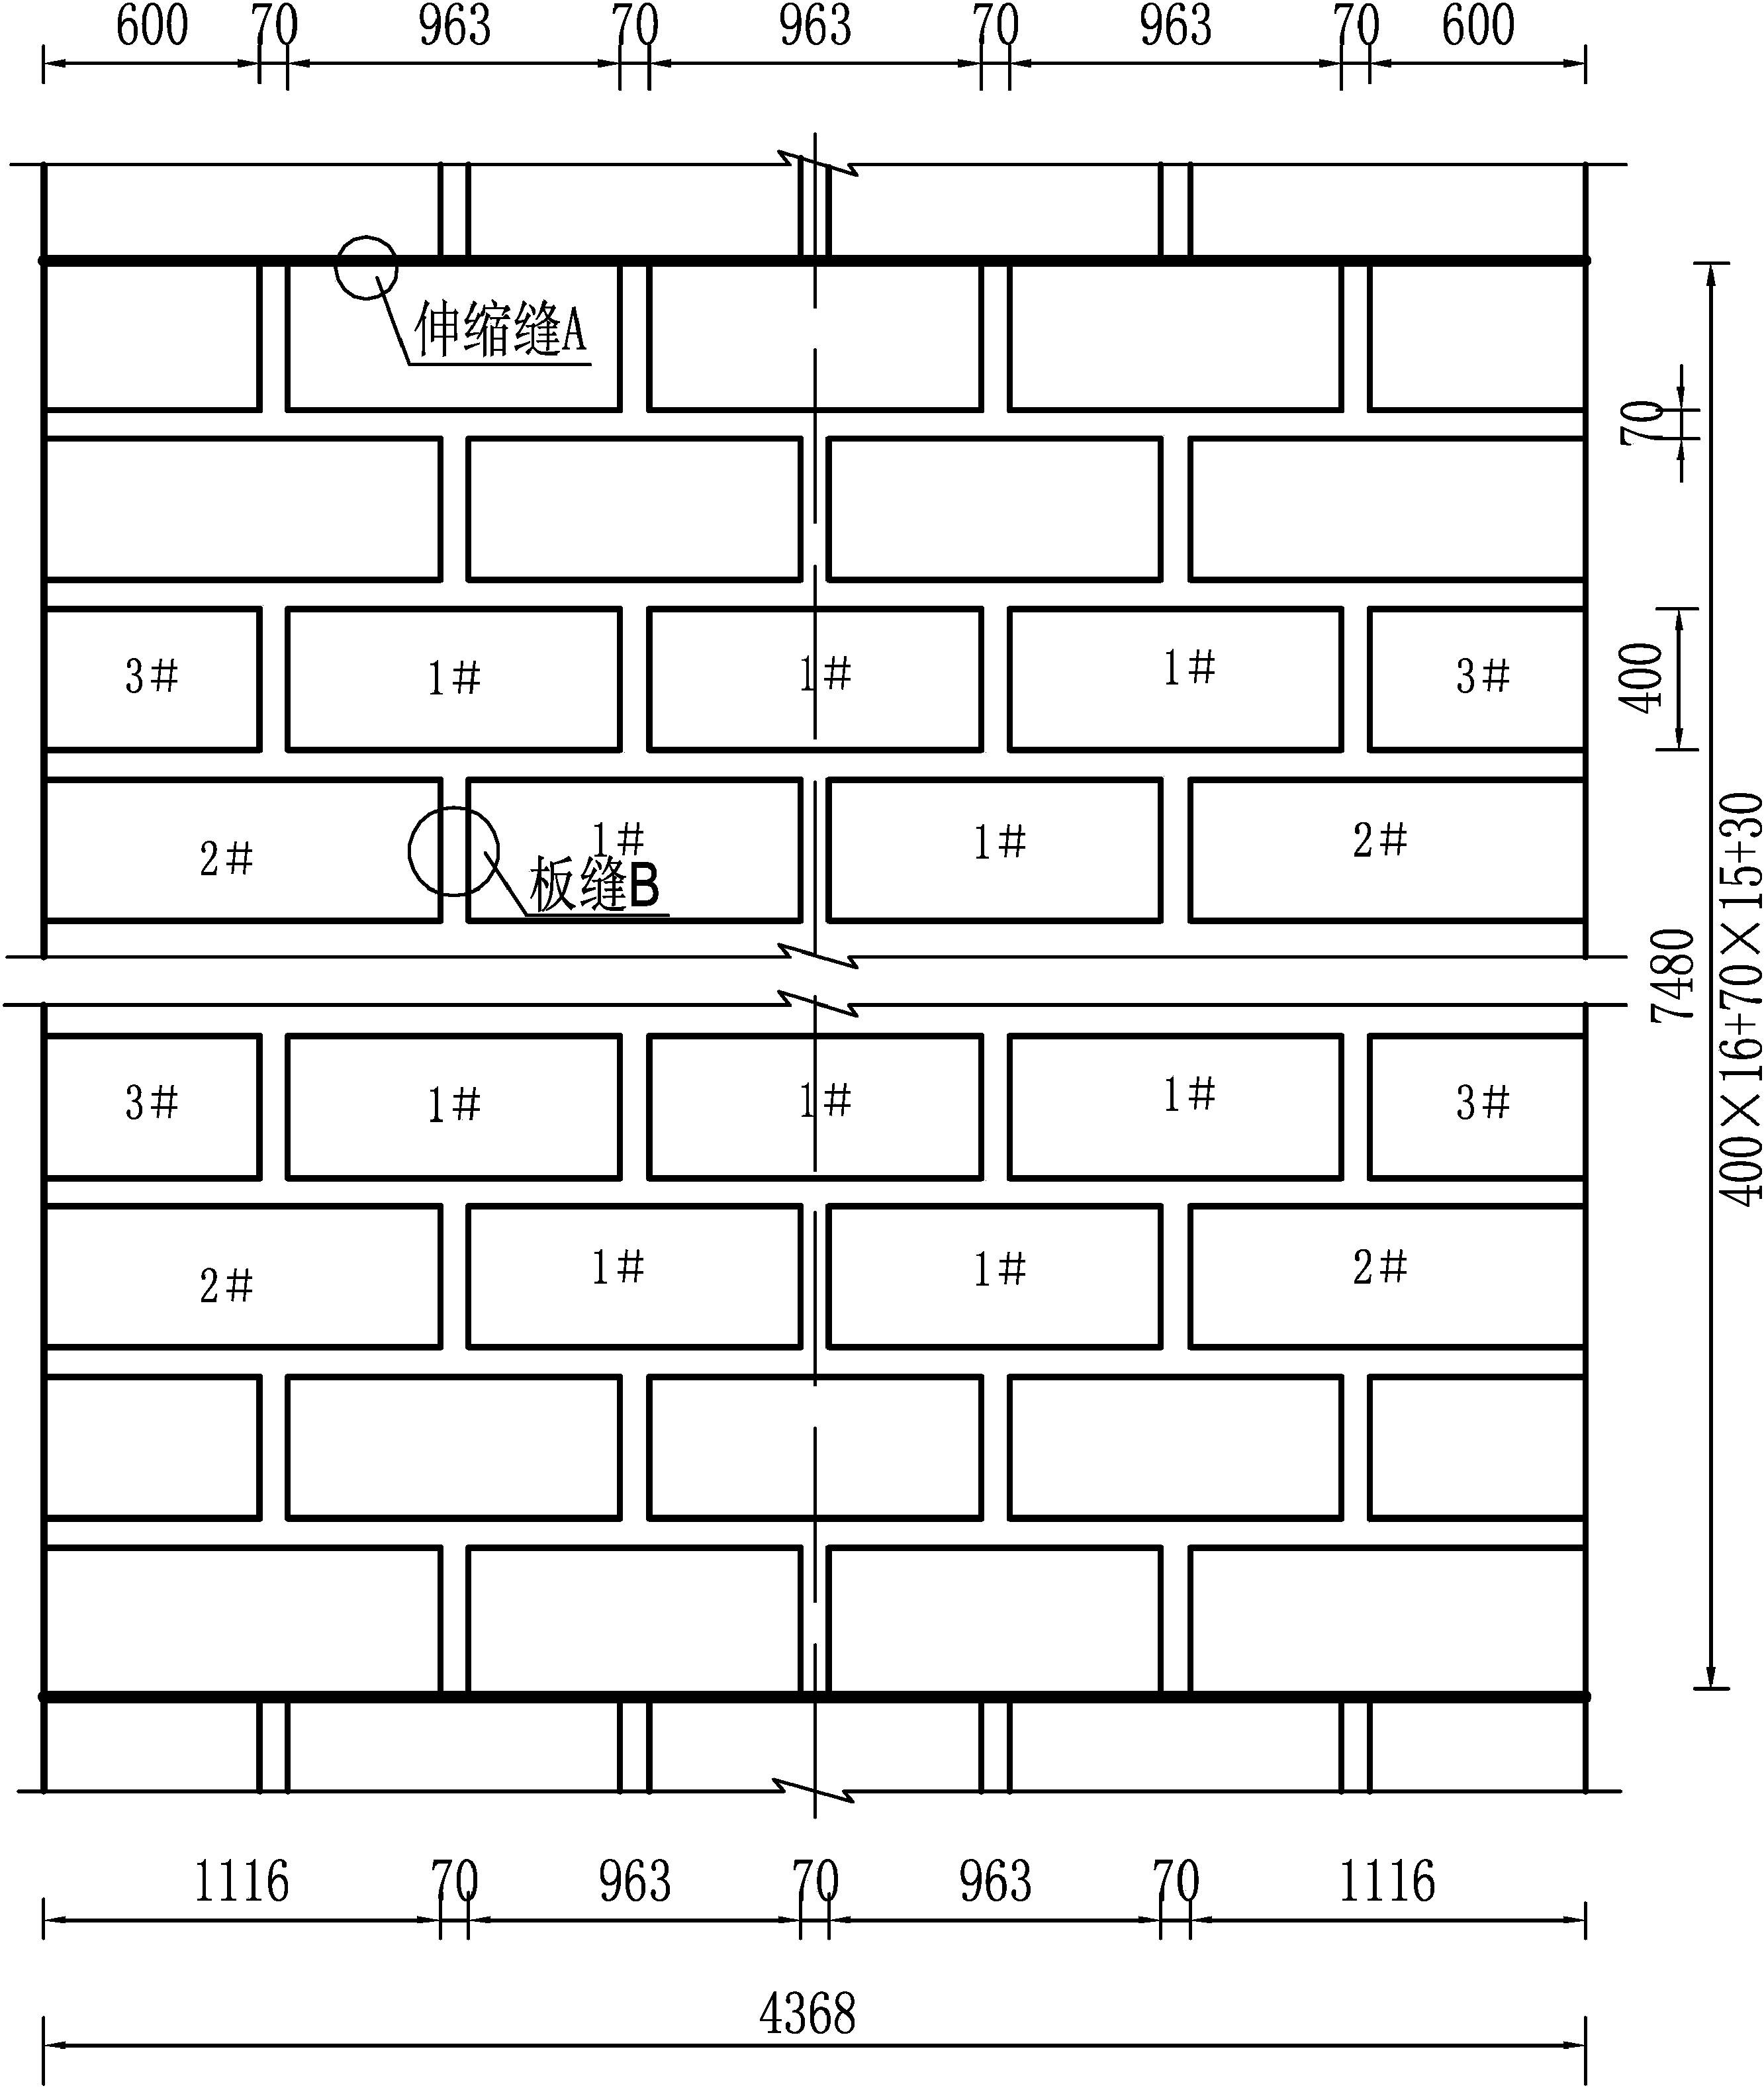 弧形渠道(D=2.8m)砌护图